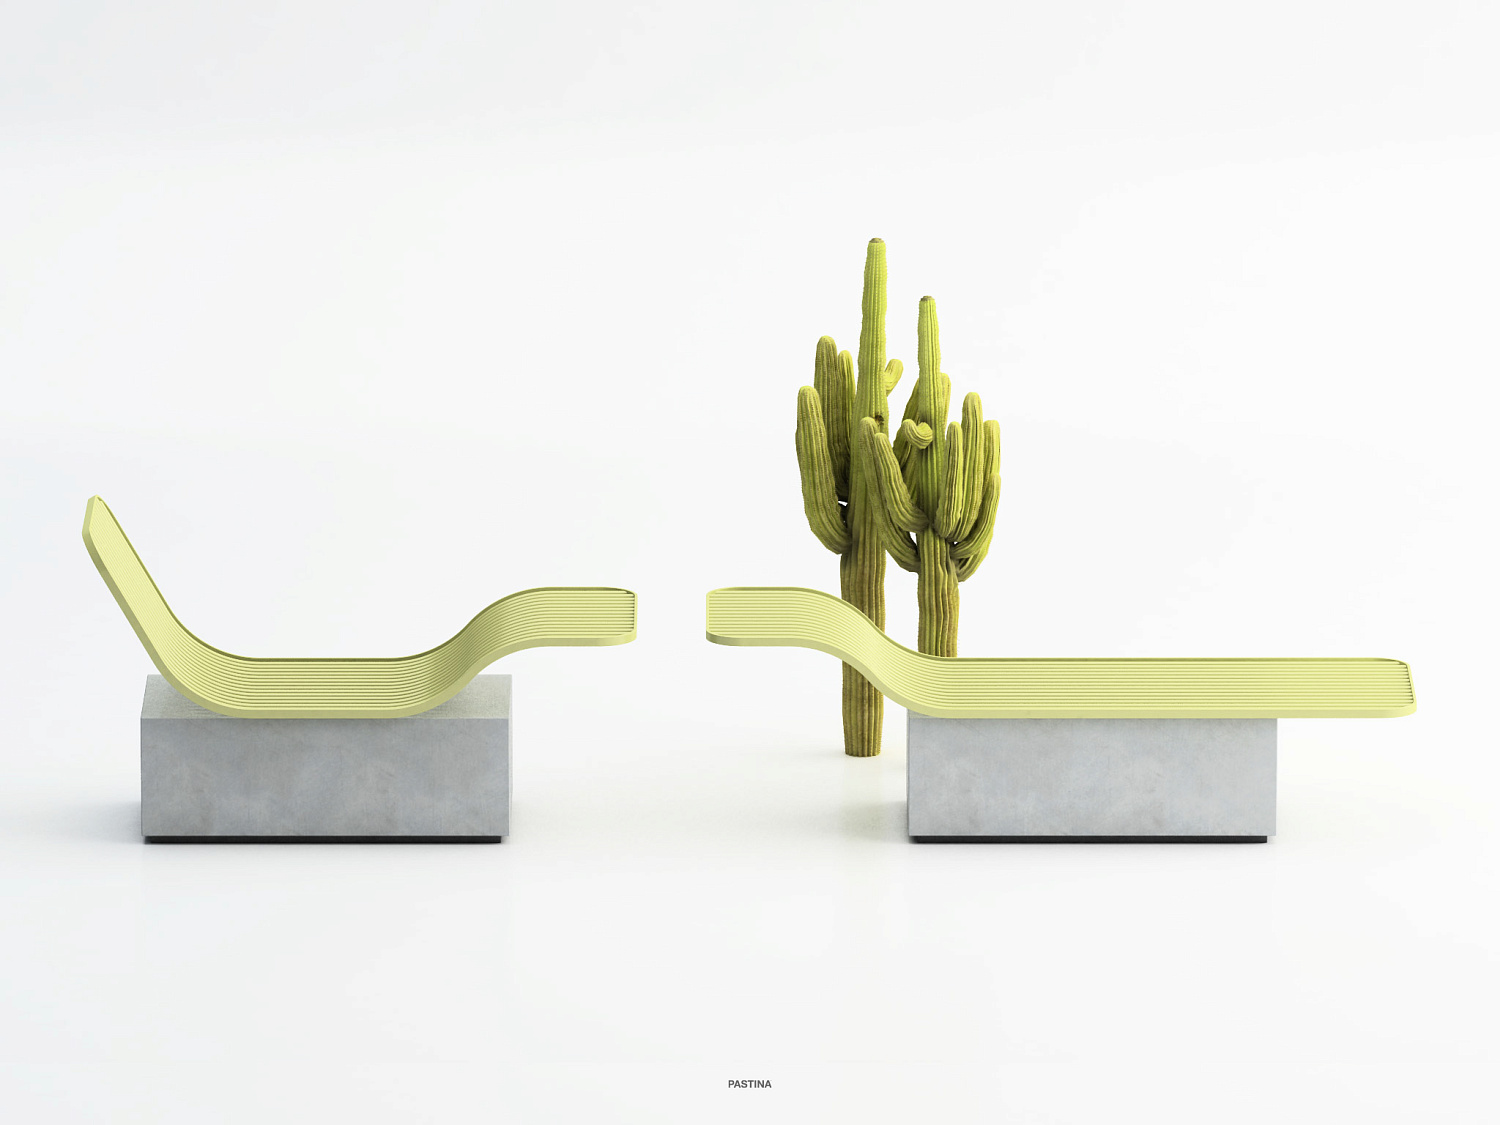 О коллекции городской мебели от Punto Design рассказали в онлайн-журнале Yanko Design